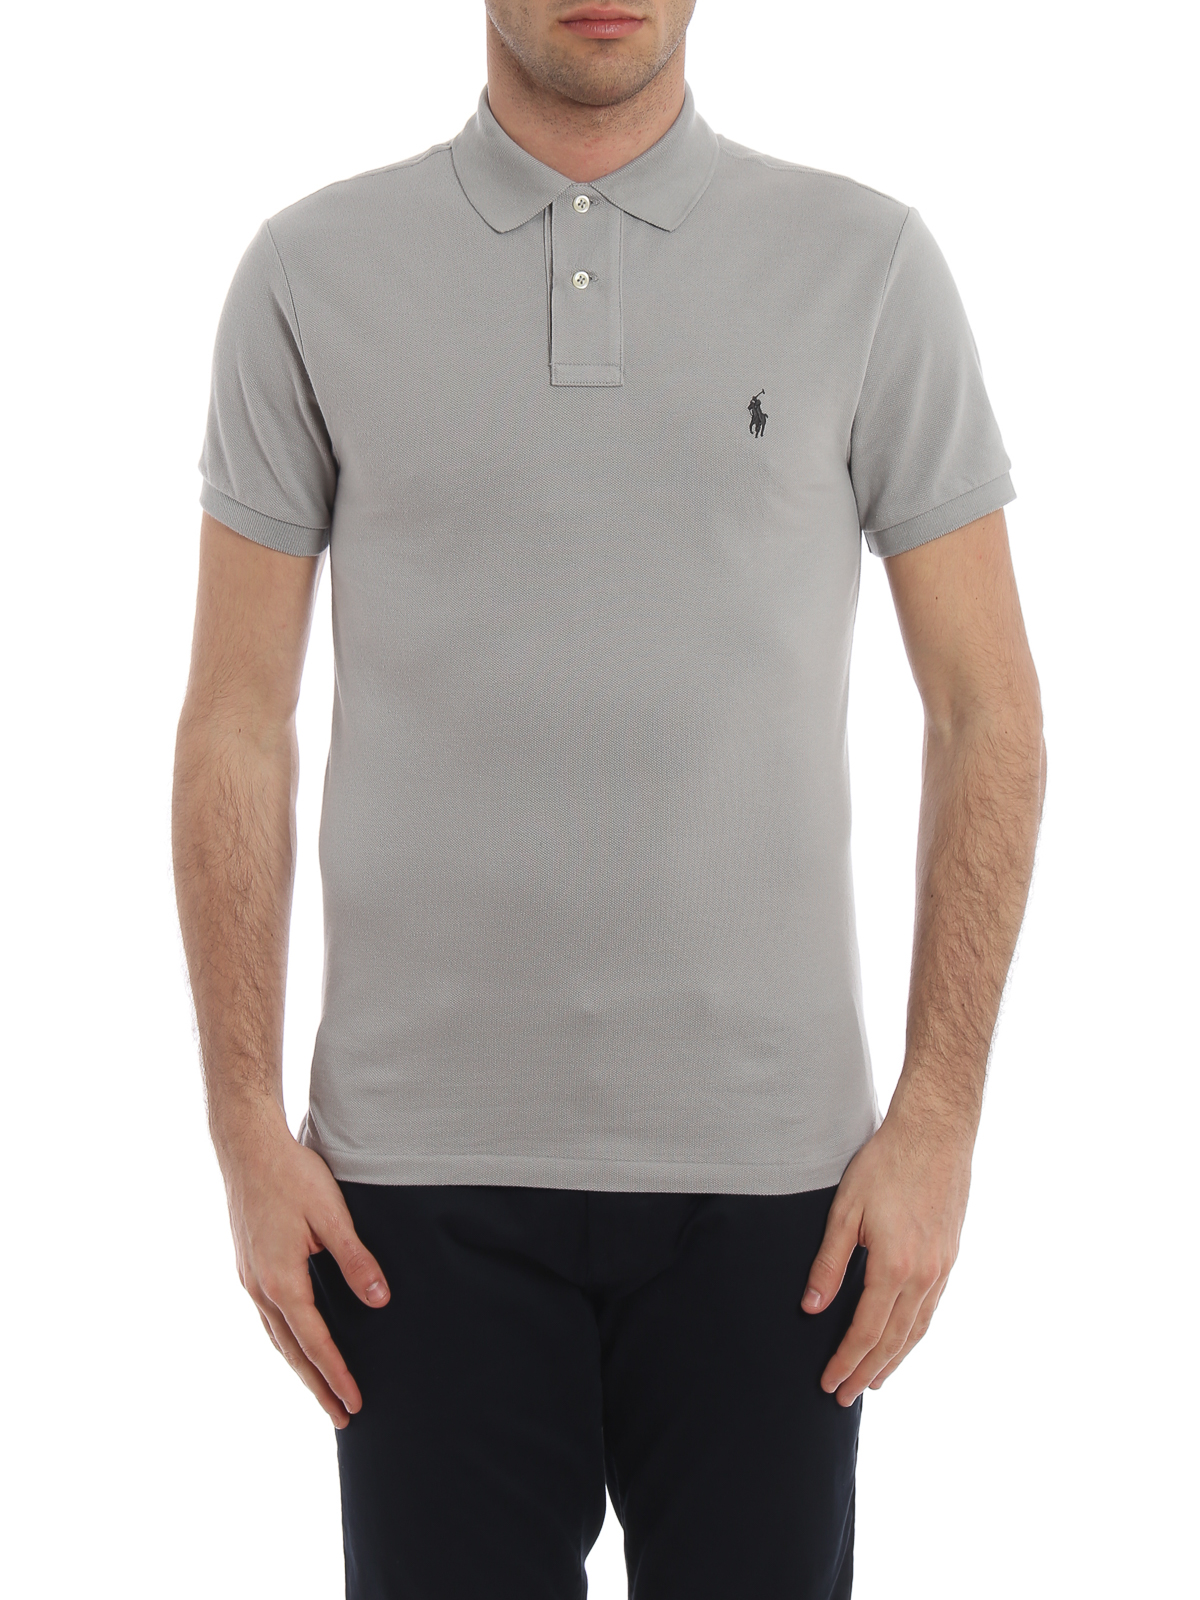 Polo shirts Polo Ralph Lauren - Classic grey polo shirt in pique cotton -  710536856174